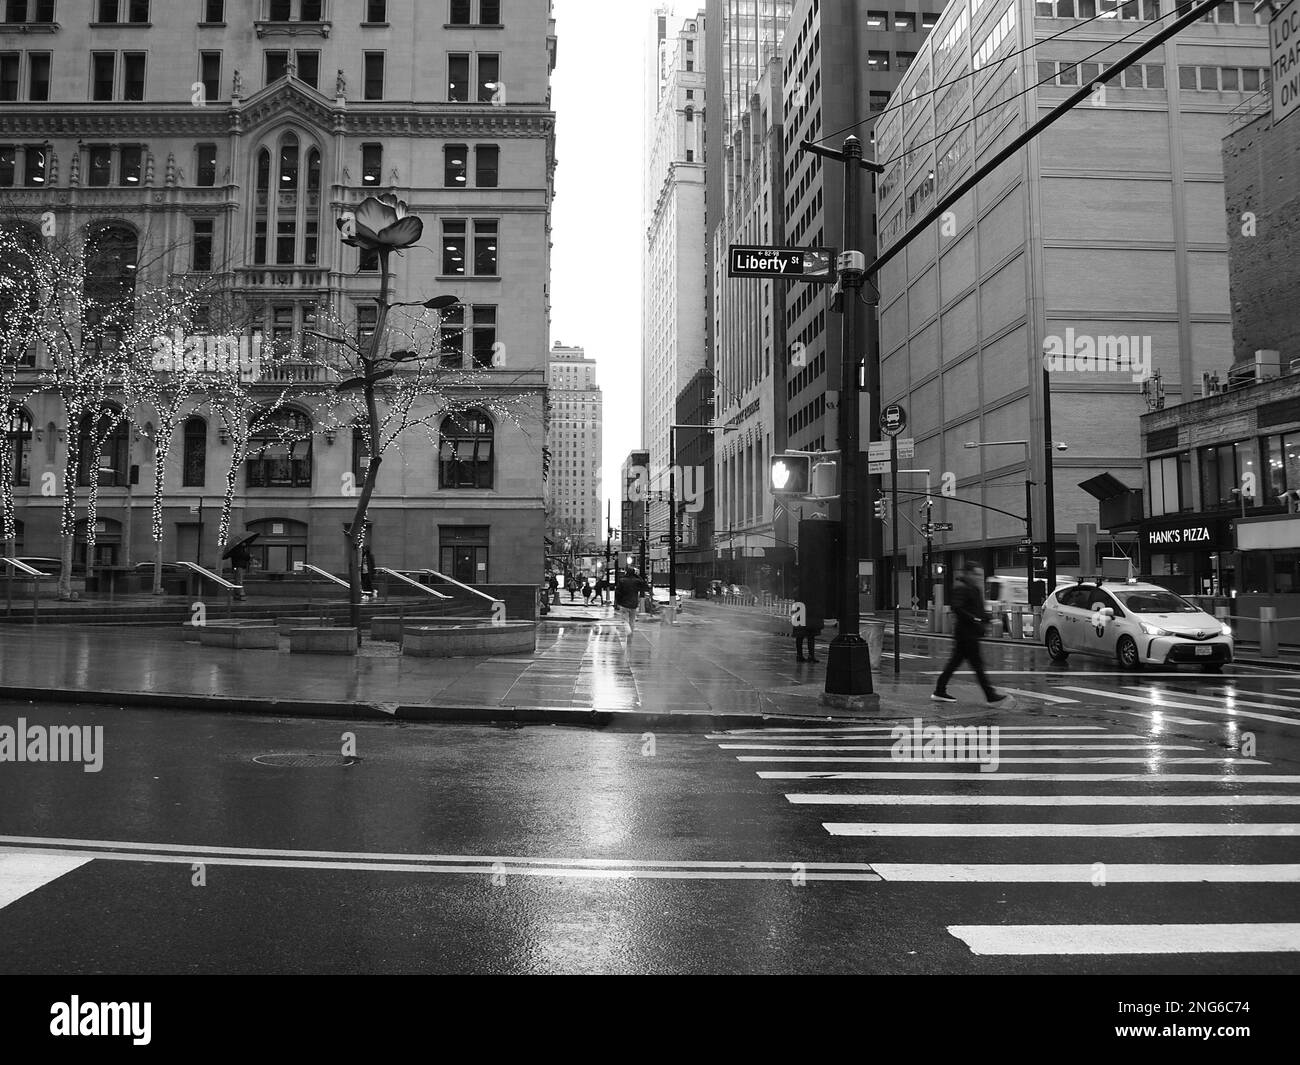 Immagini di strada di New York City sotto la pioggia e in bianco e nero. Immagini casuali che mostrano gli escursionisti sotto la pioggia. Foto Stock